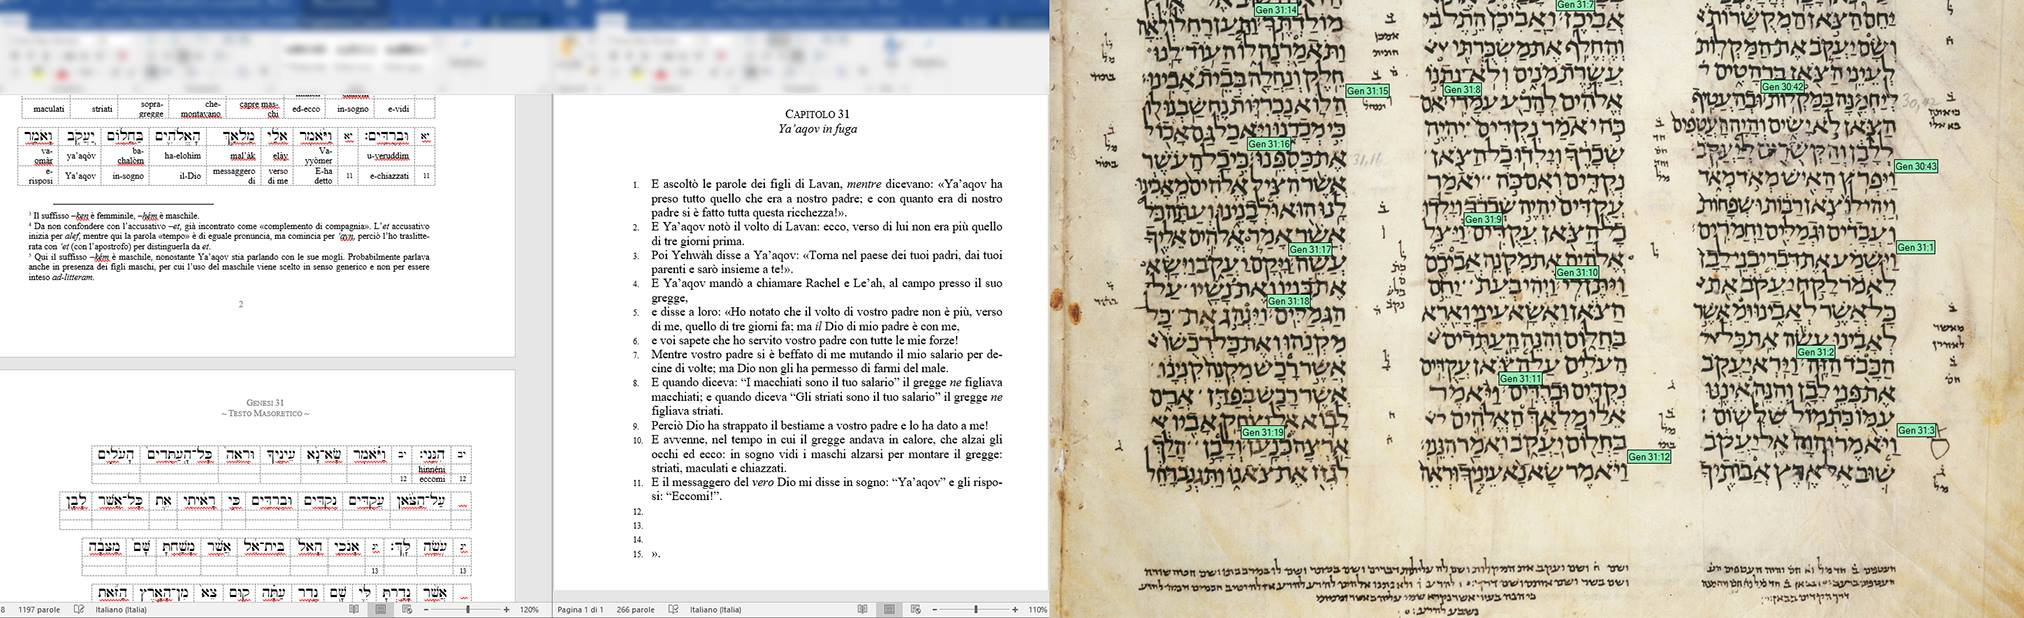 Bibbia Ebraica Interlineare Pdf ~REPACK~ Free ☘️